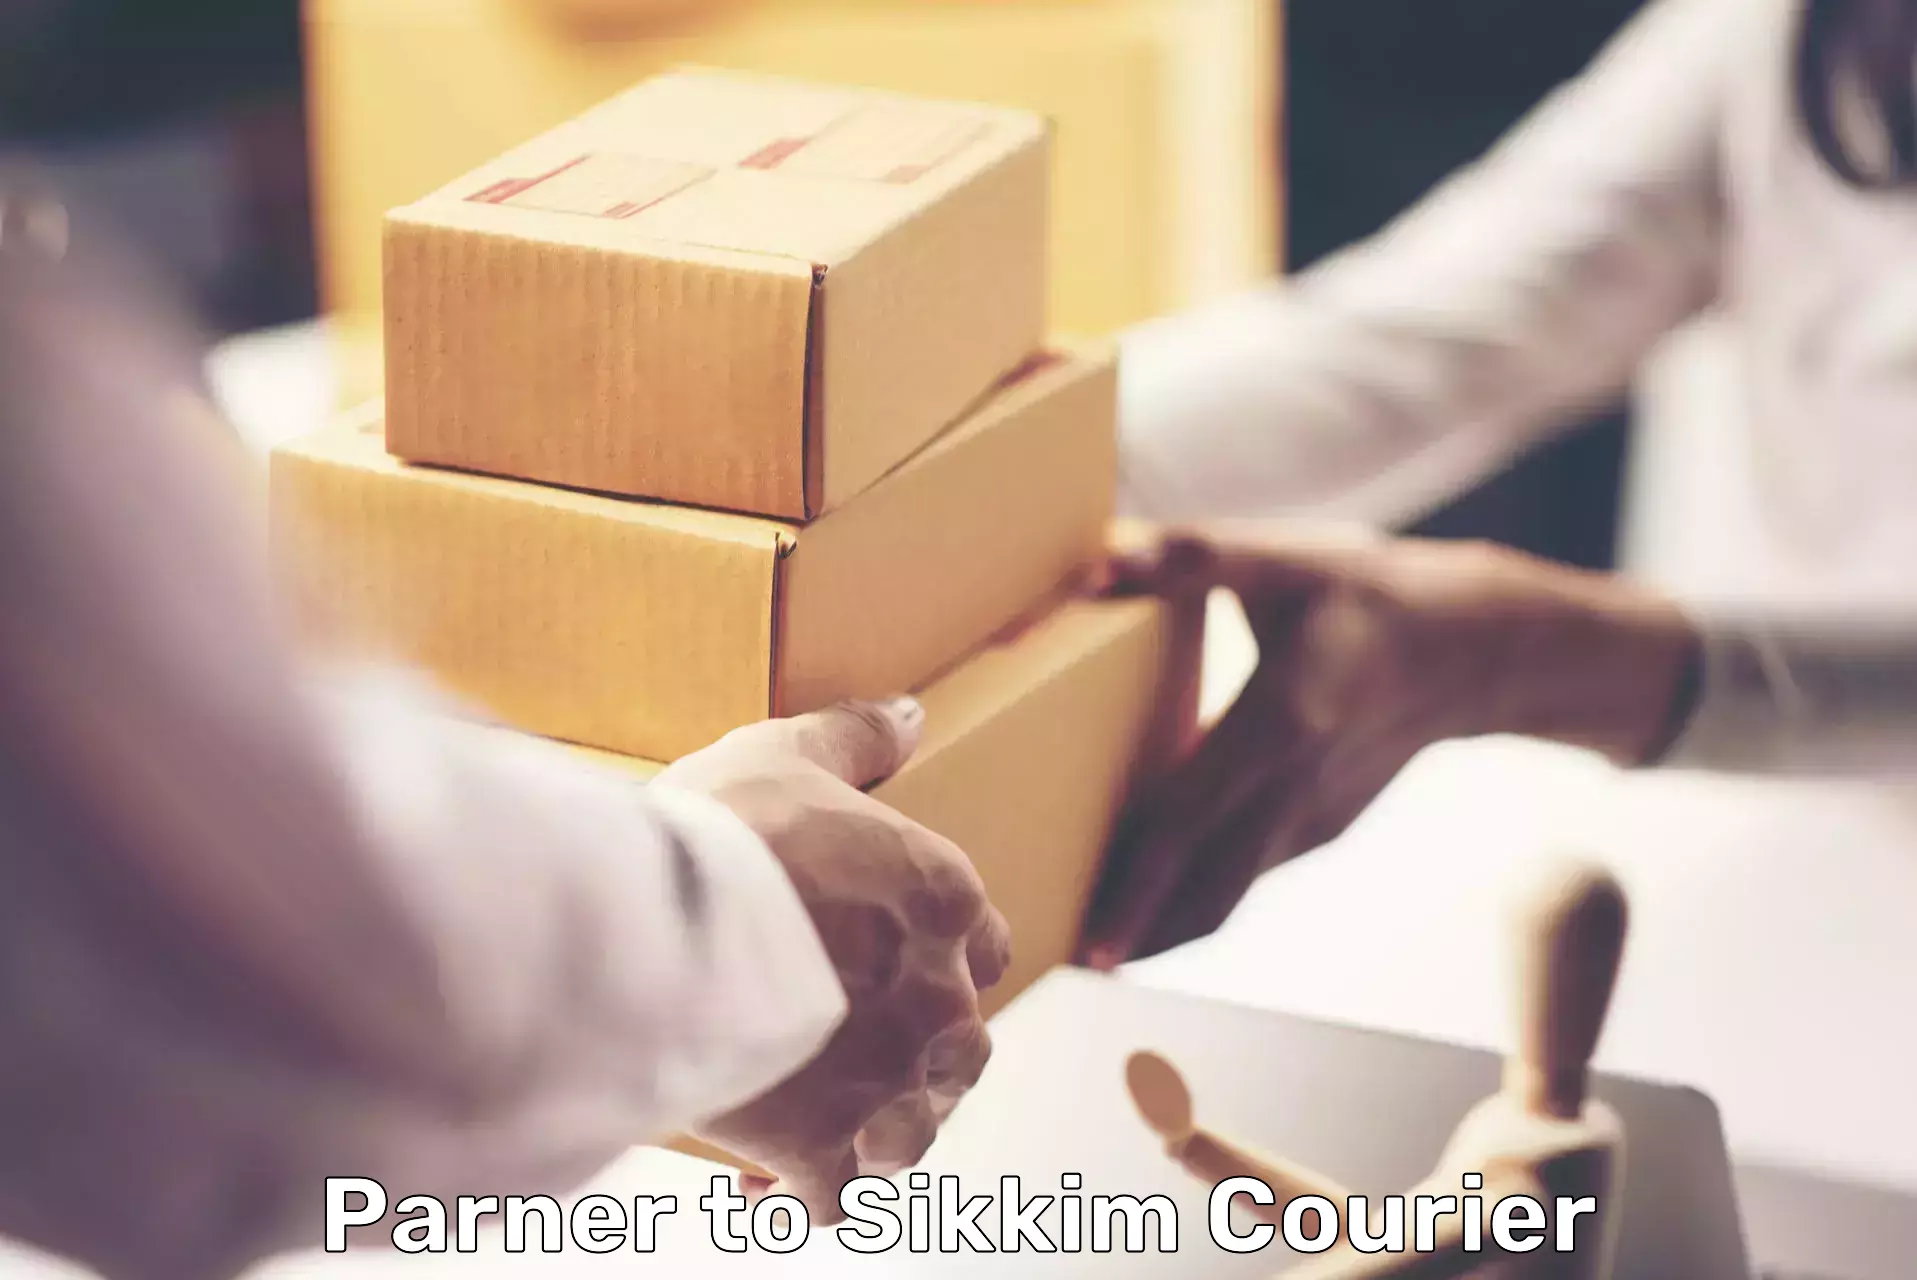 Efficient parcel service Parner to Namchi